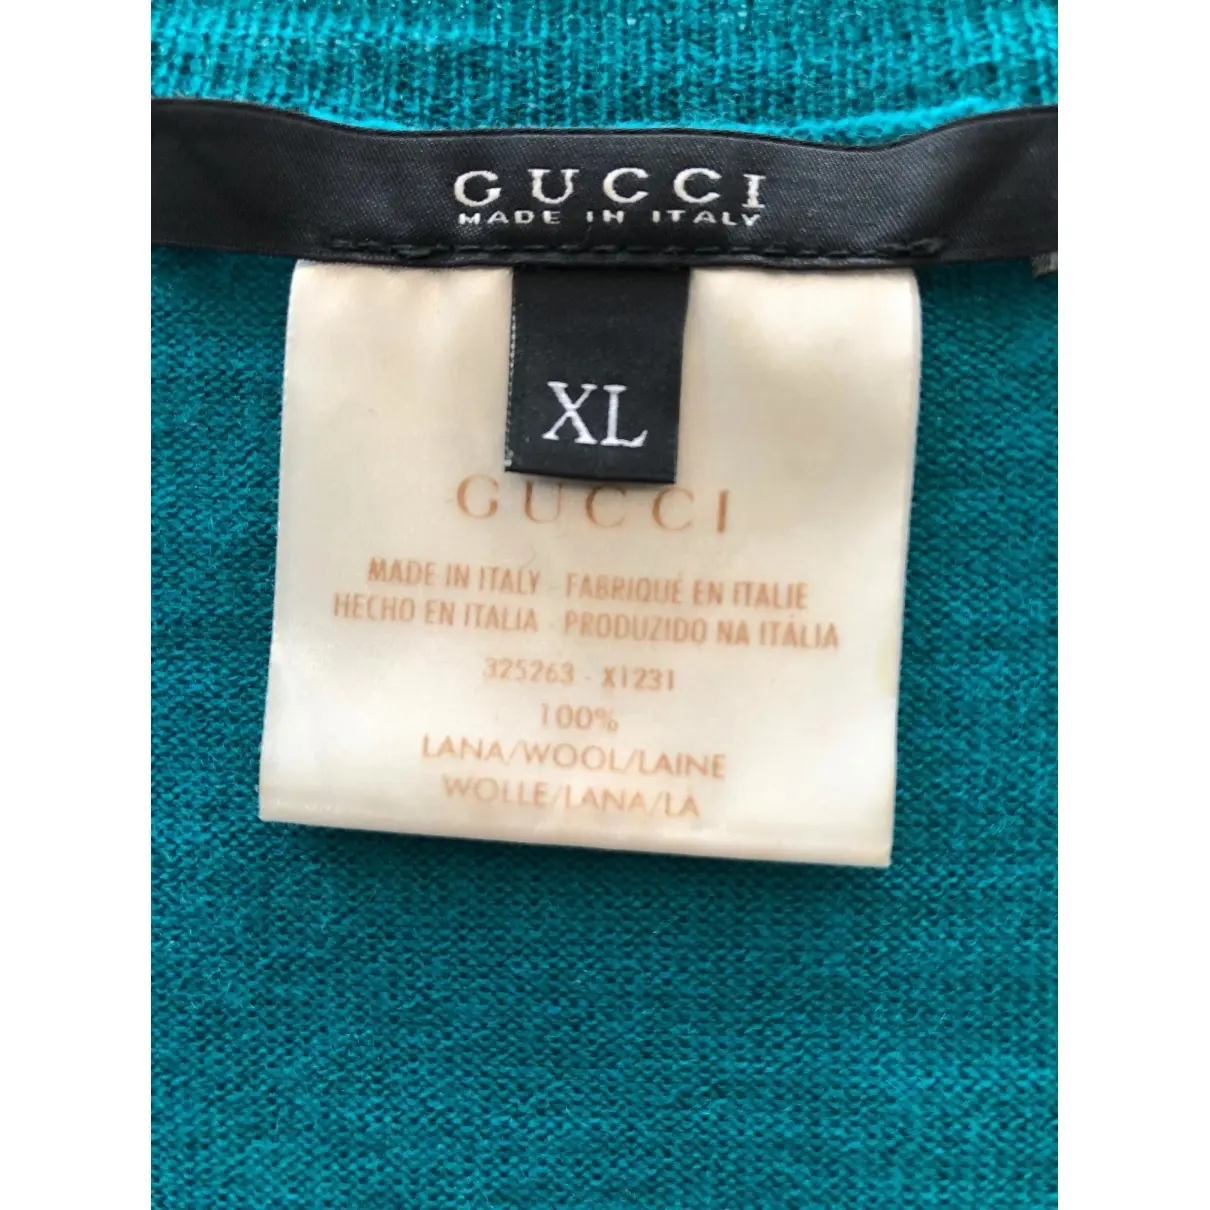 Buy Gucci Wool jumper online - Vintage